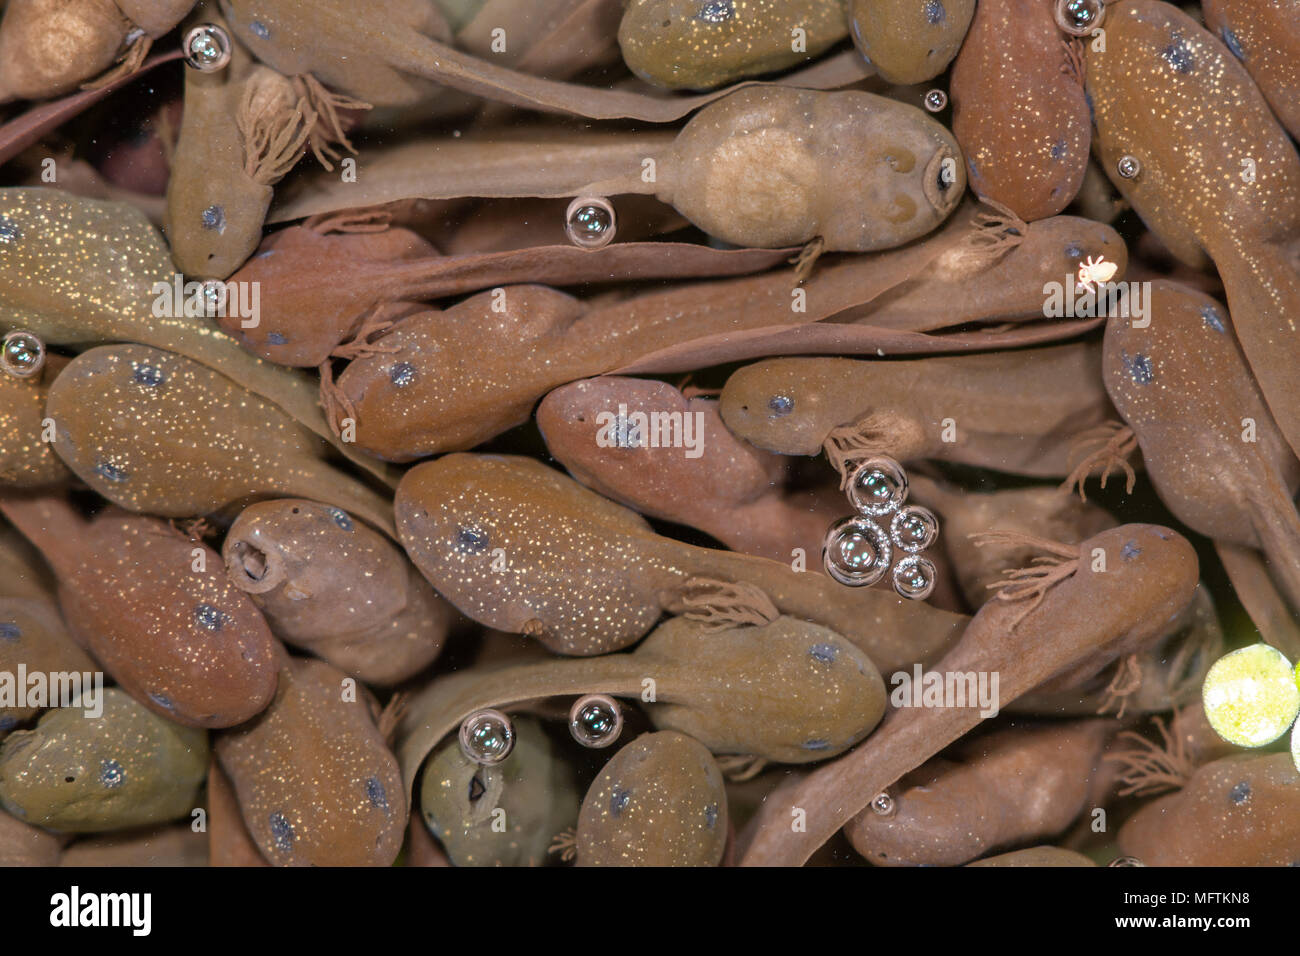 Massa di girini di rana comune (Rana temporaria). Piccoli girini poco dopo la schiusa delle uova in corrispondenza della superficie di stagno, nella famiglia ranidi Foto Stock